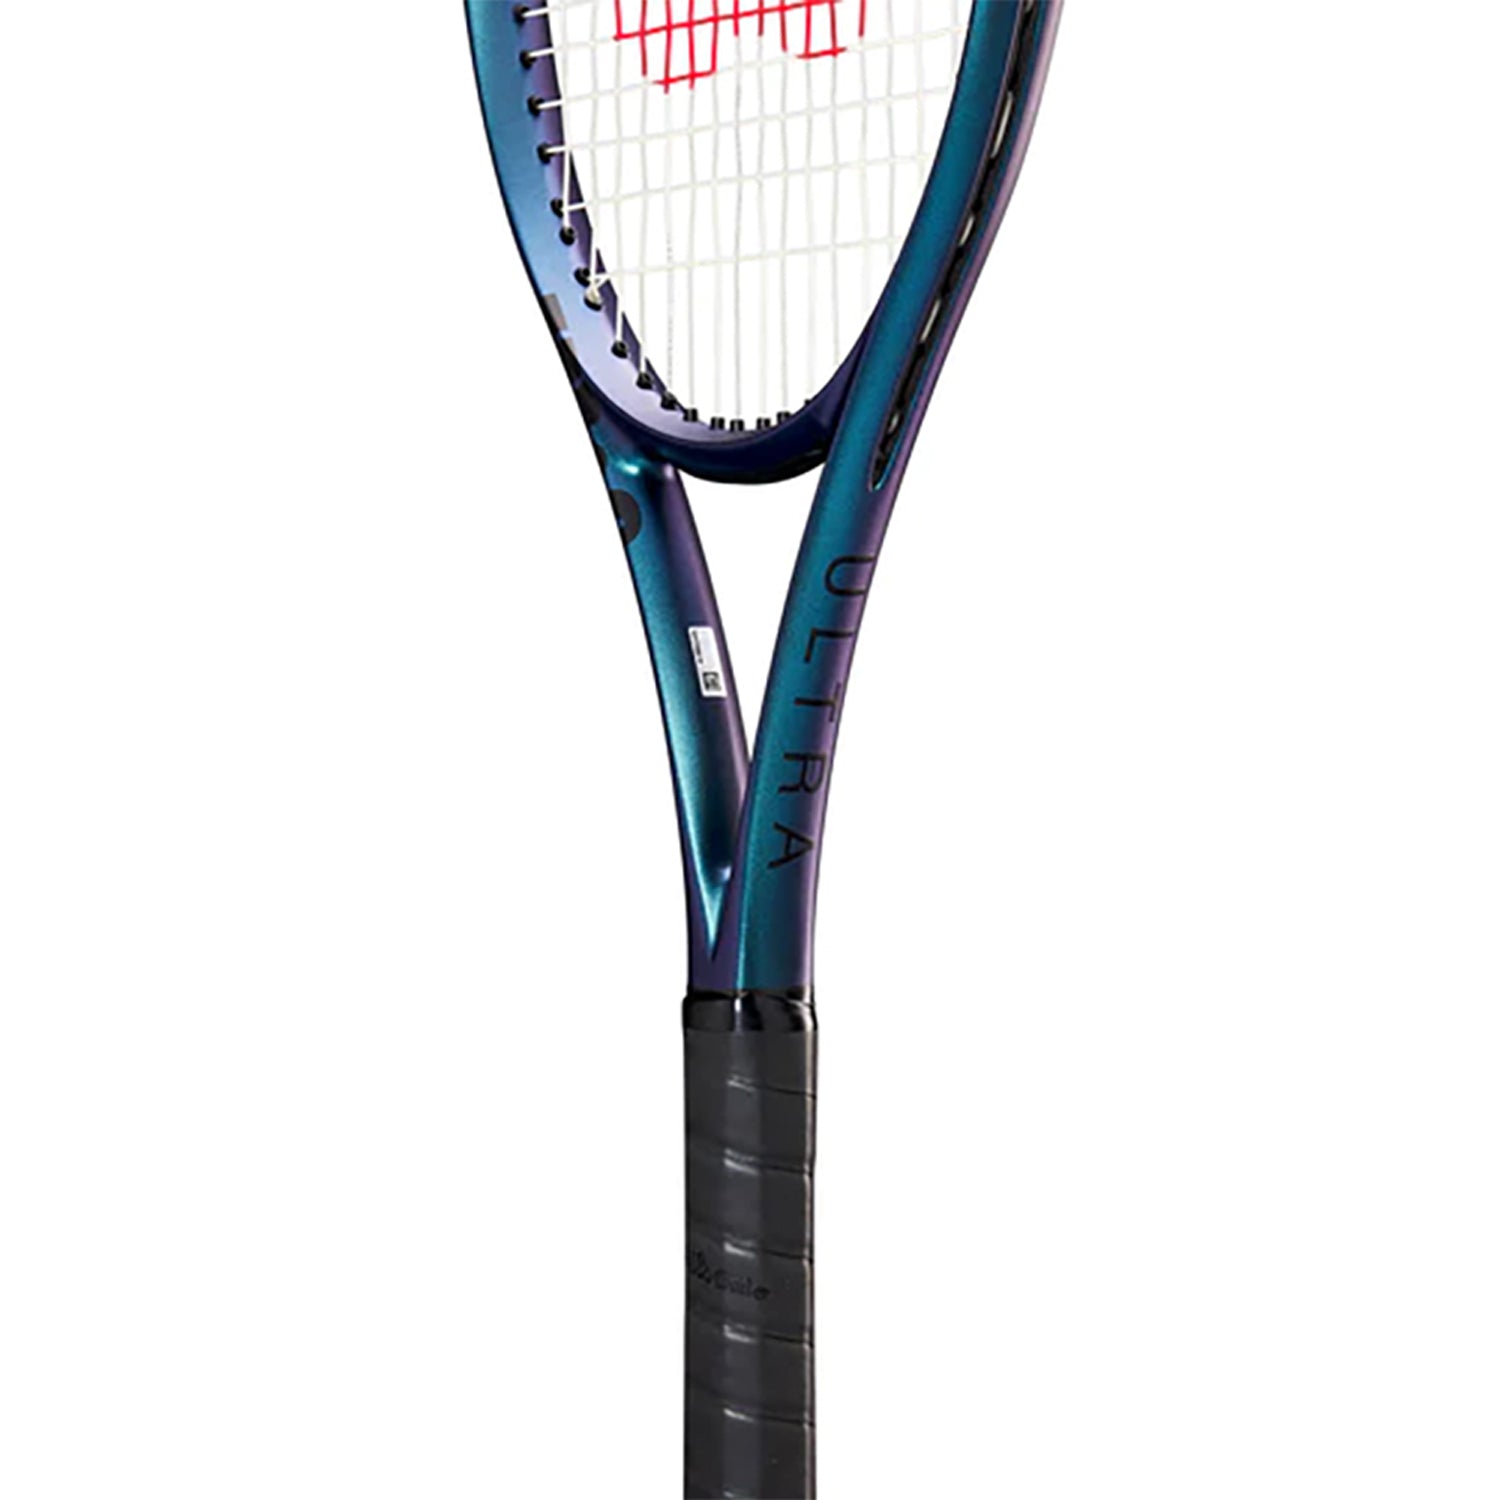 Wilson Ultra 100UL V4.0 FRM 2 Tennis Racquet - Best Price online Prokicksports.com